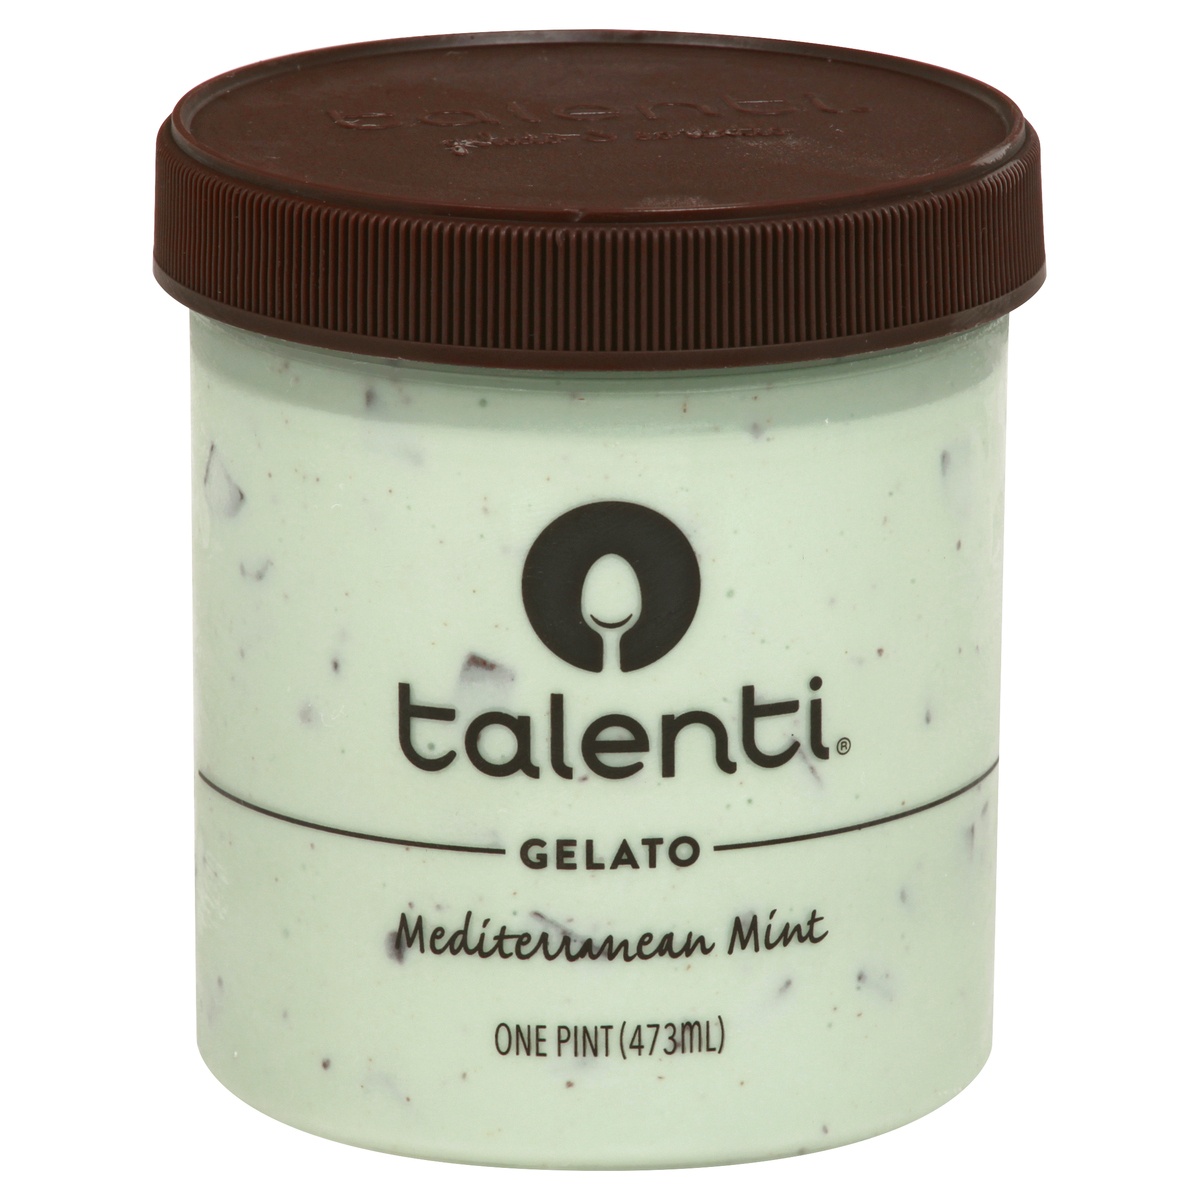 slide 1 of 1, Talenti Mediterranean Mint Gelato, 1 pint